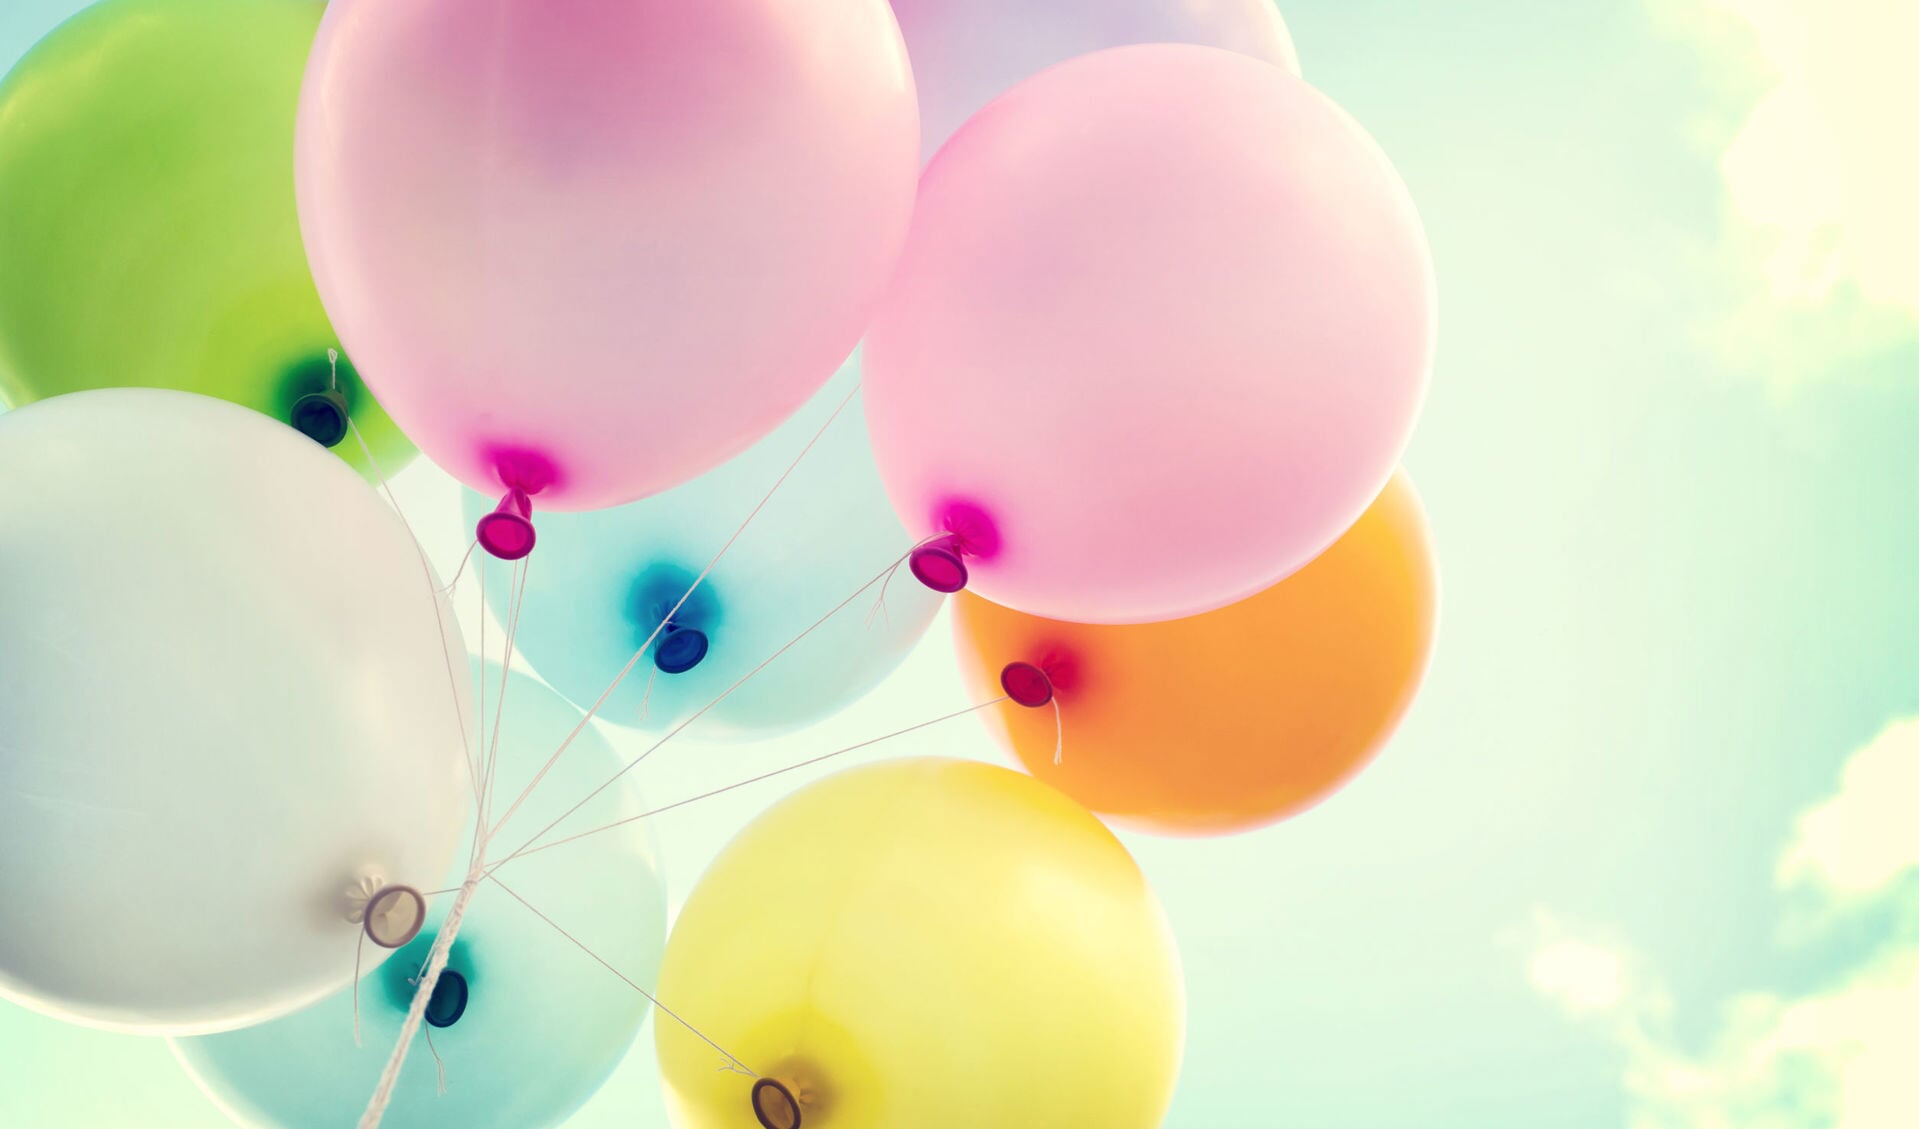 • Het oplaten van ballonnen is niet meer toegestaan in Krimpenerwaard.